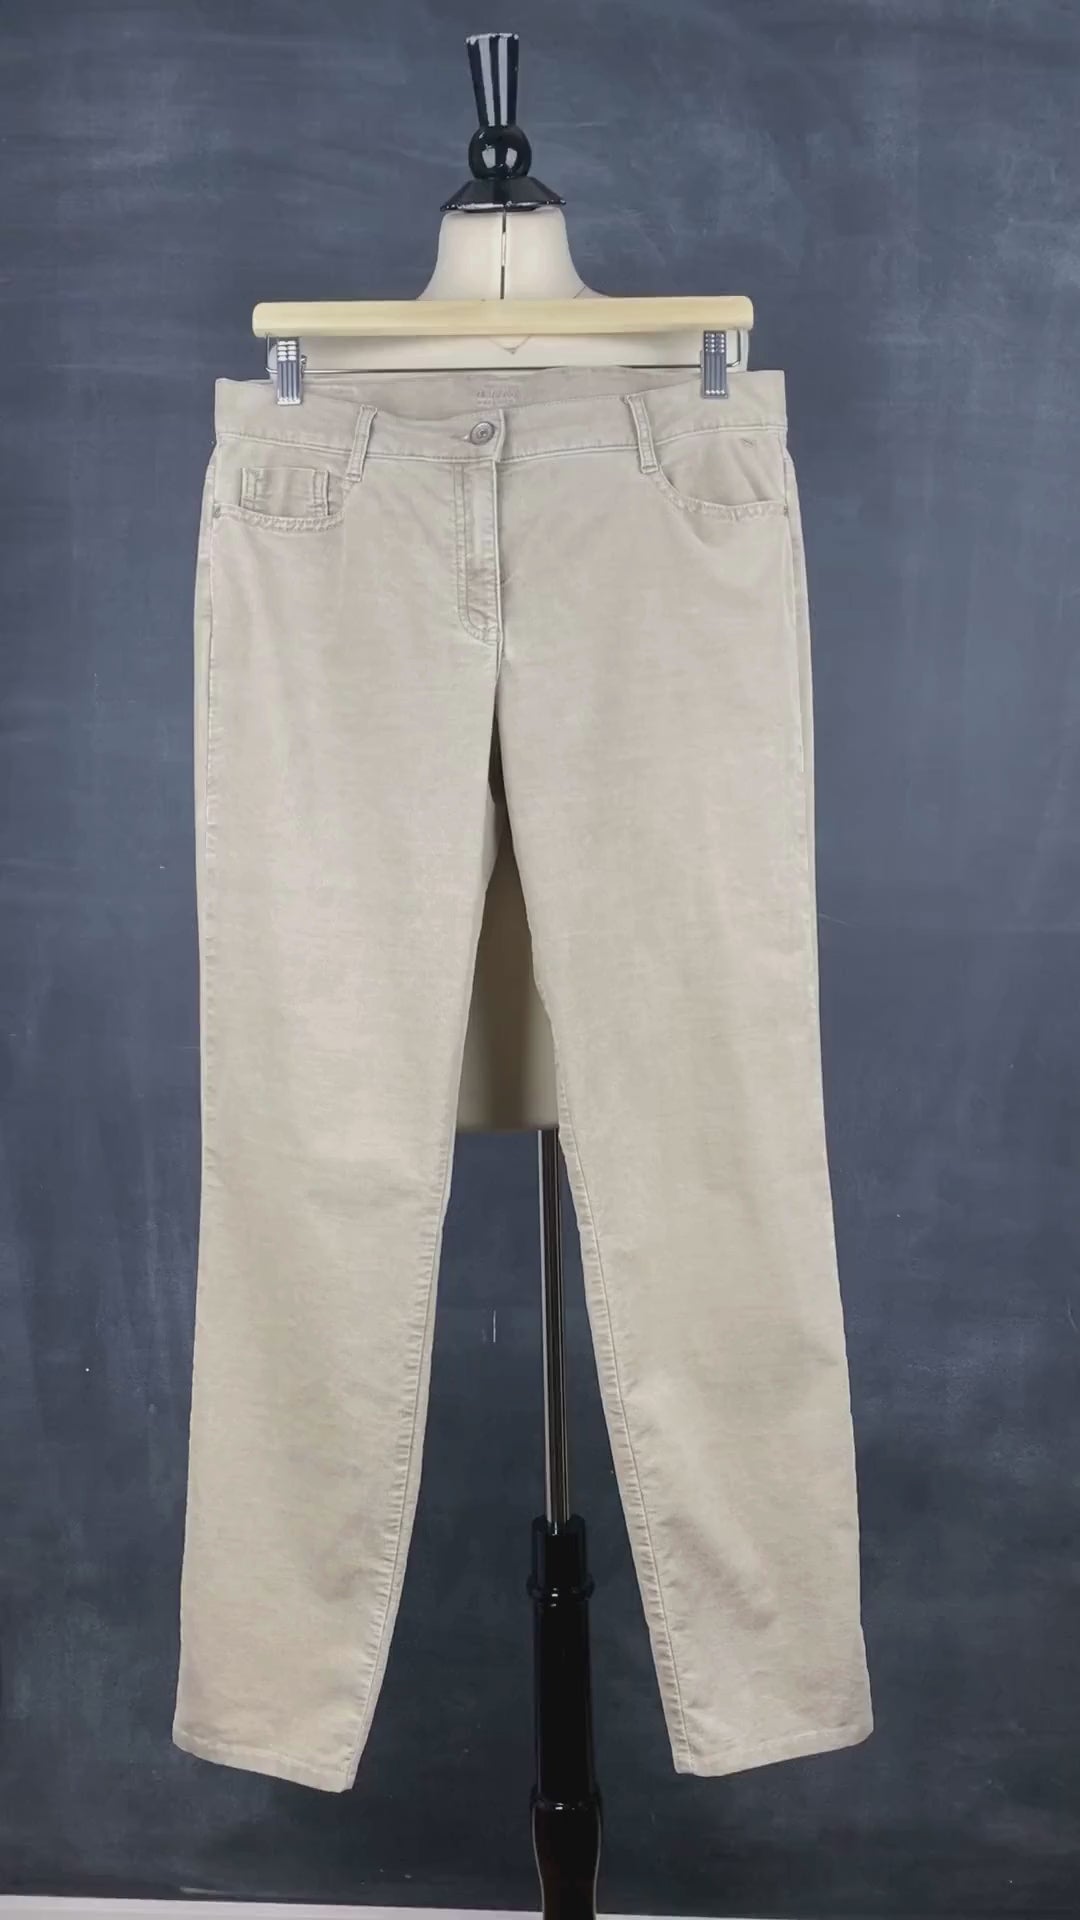 Pantalon en fin velours côtelé beige Brax, taille 31. Vue de la vidéo qui présente tous les détails du pantalon.